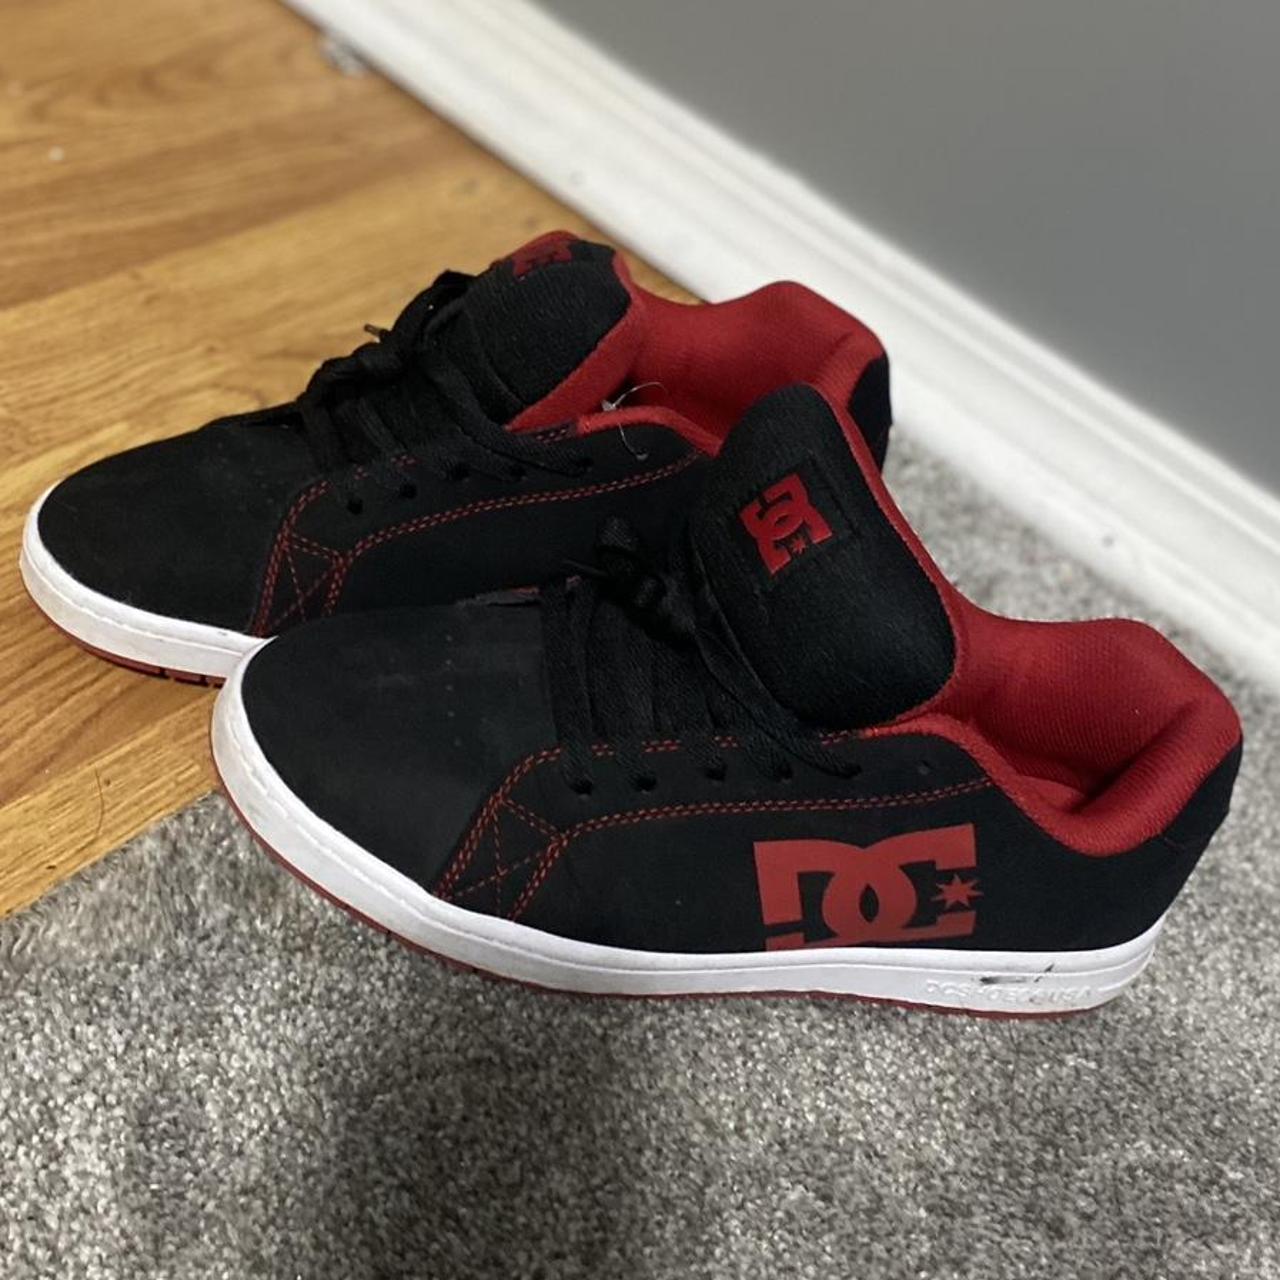 Red/black vintage dc shoes - Depop